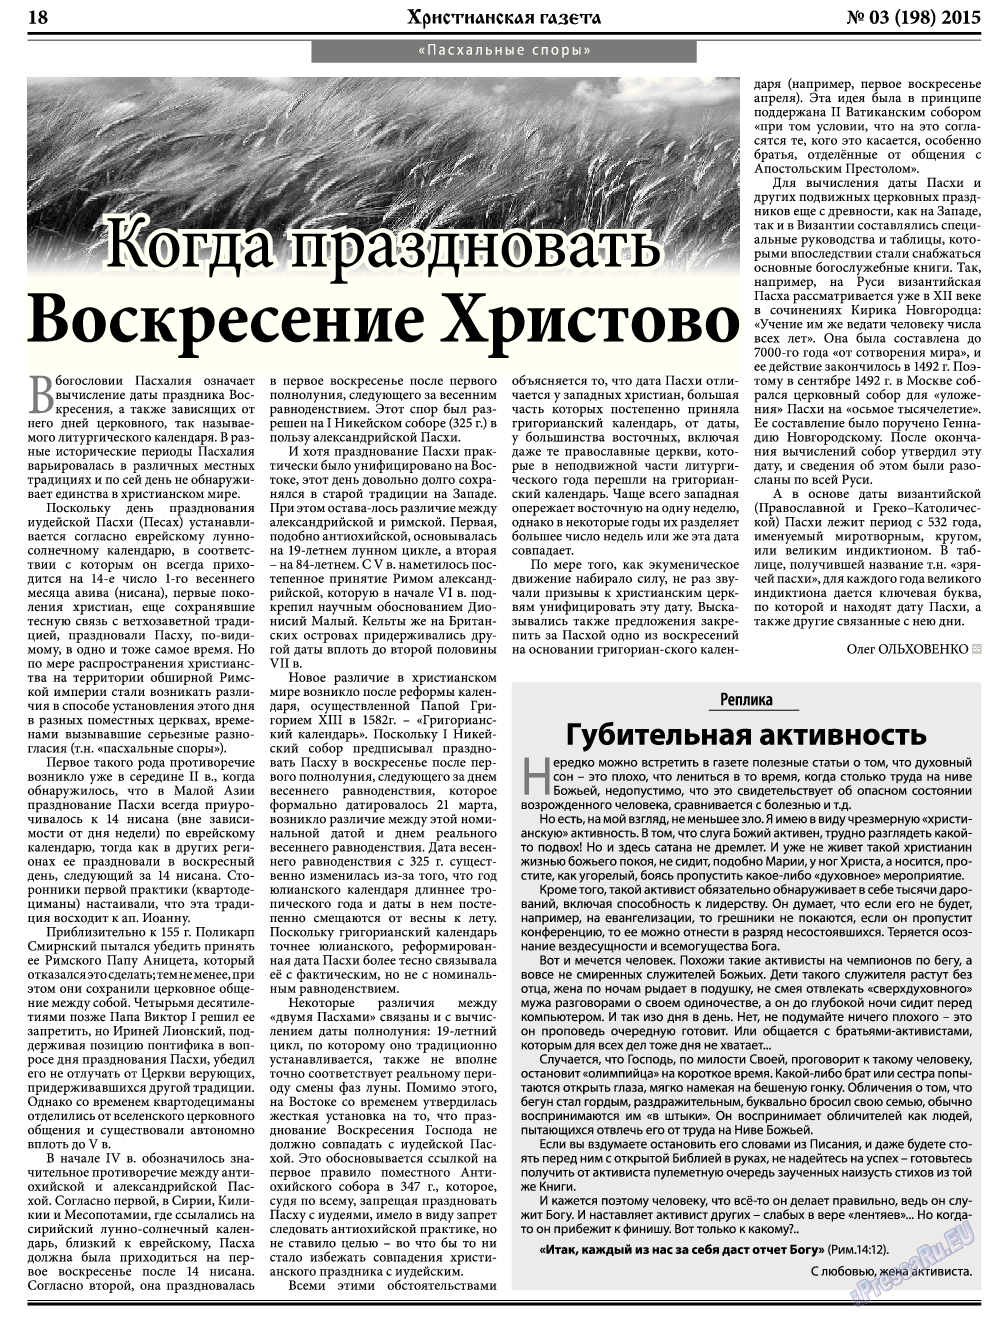 Христианская газета, газета. 2015 №3 стр.26